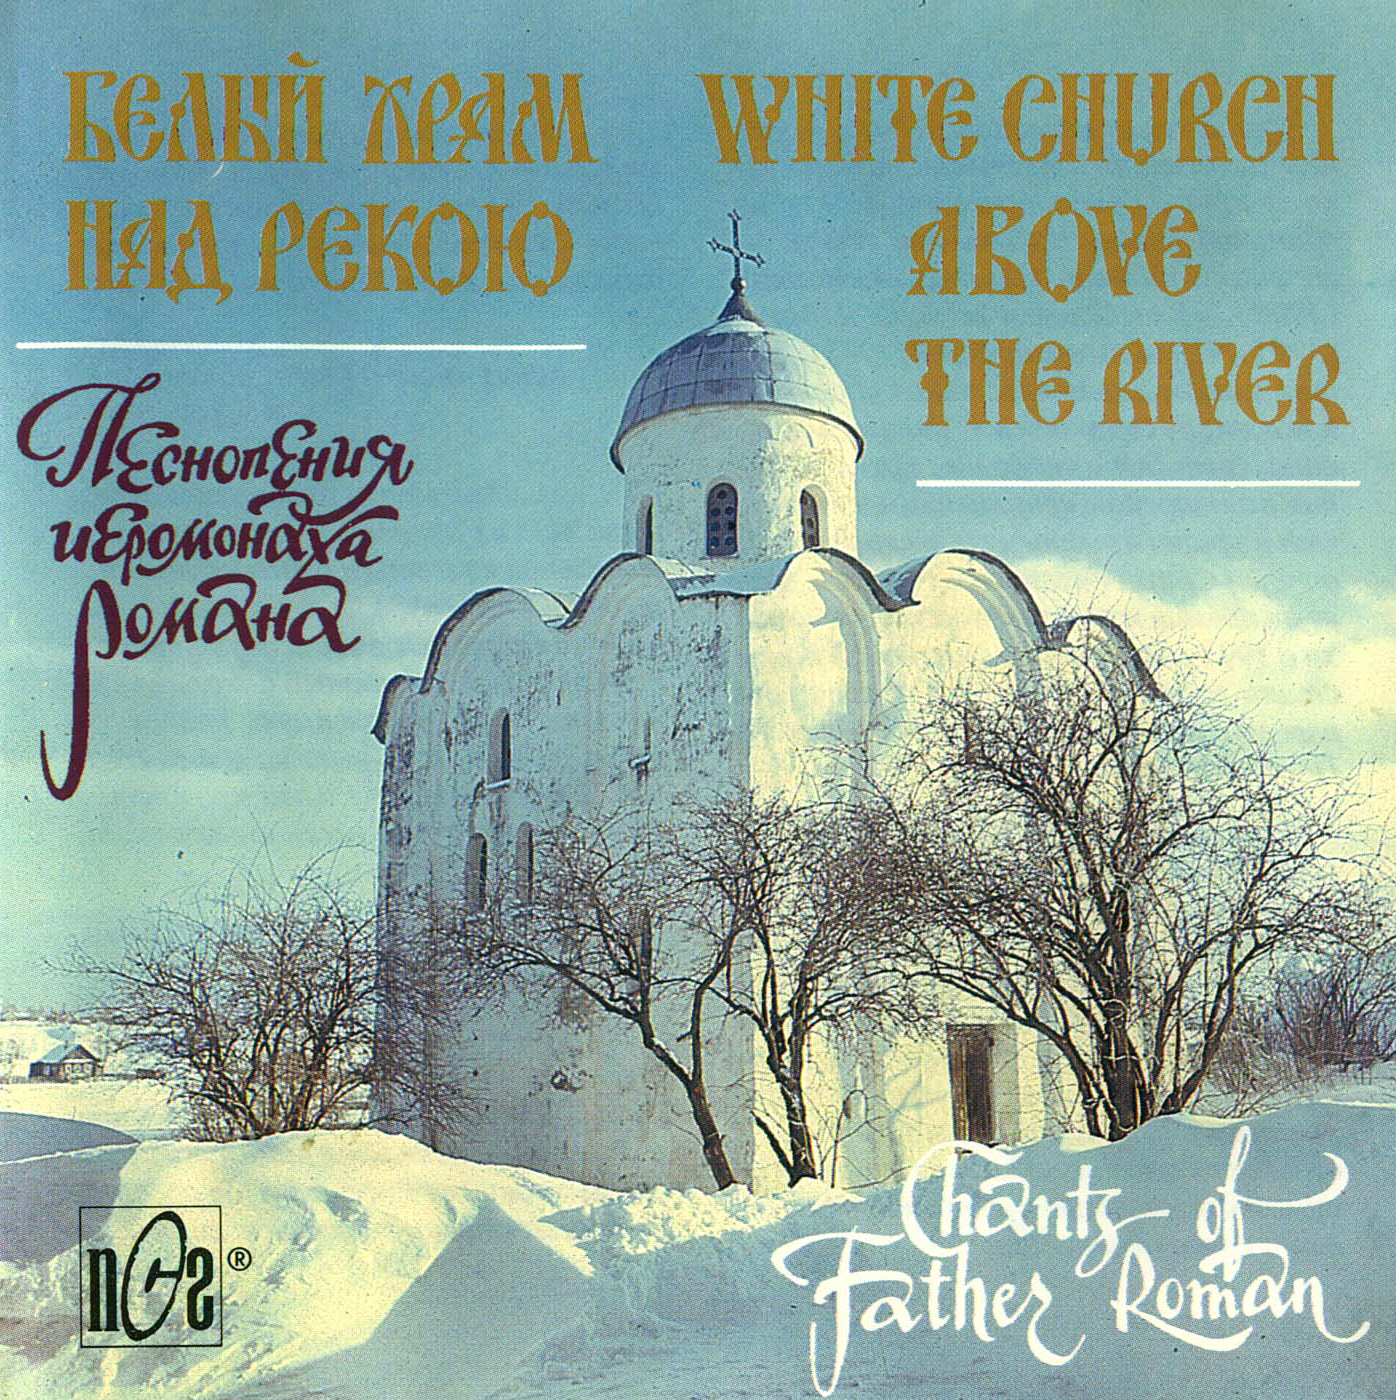 Слушать православные песни подряд